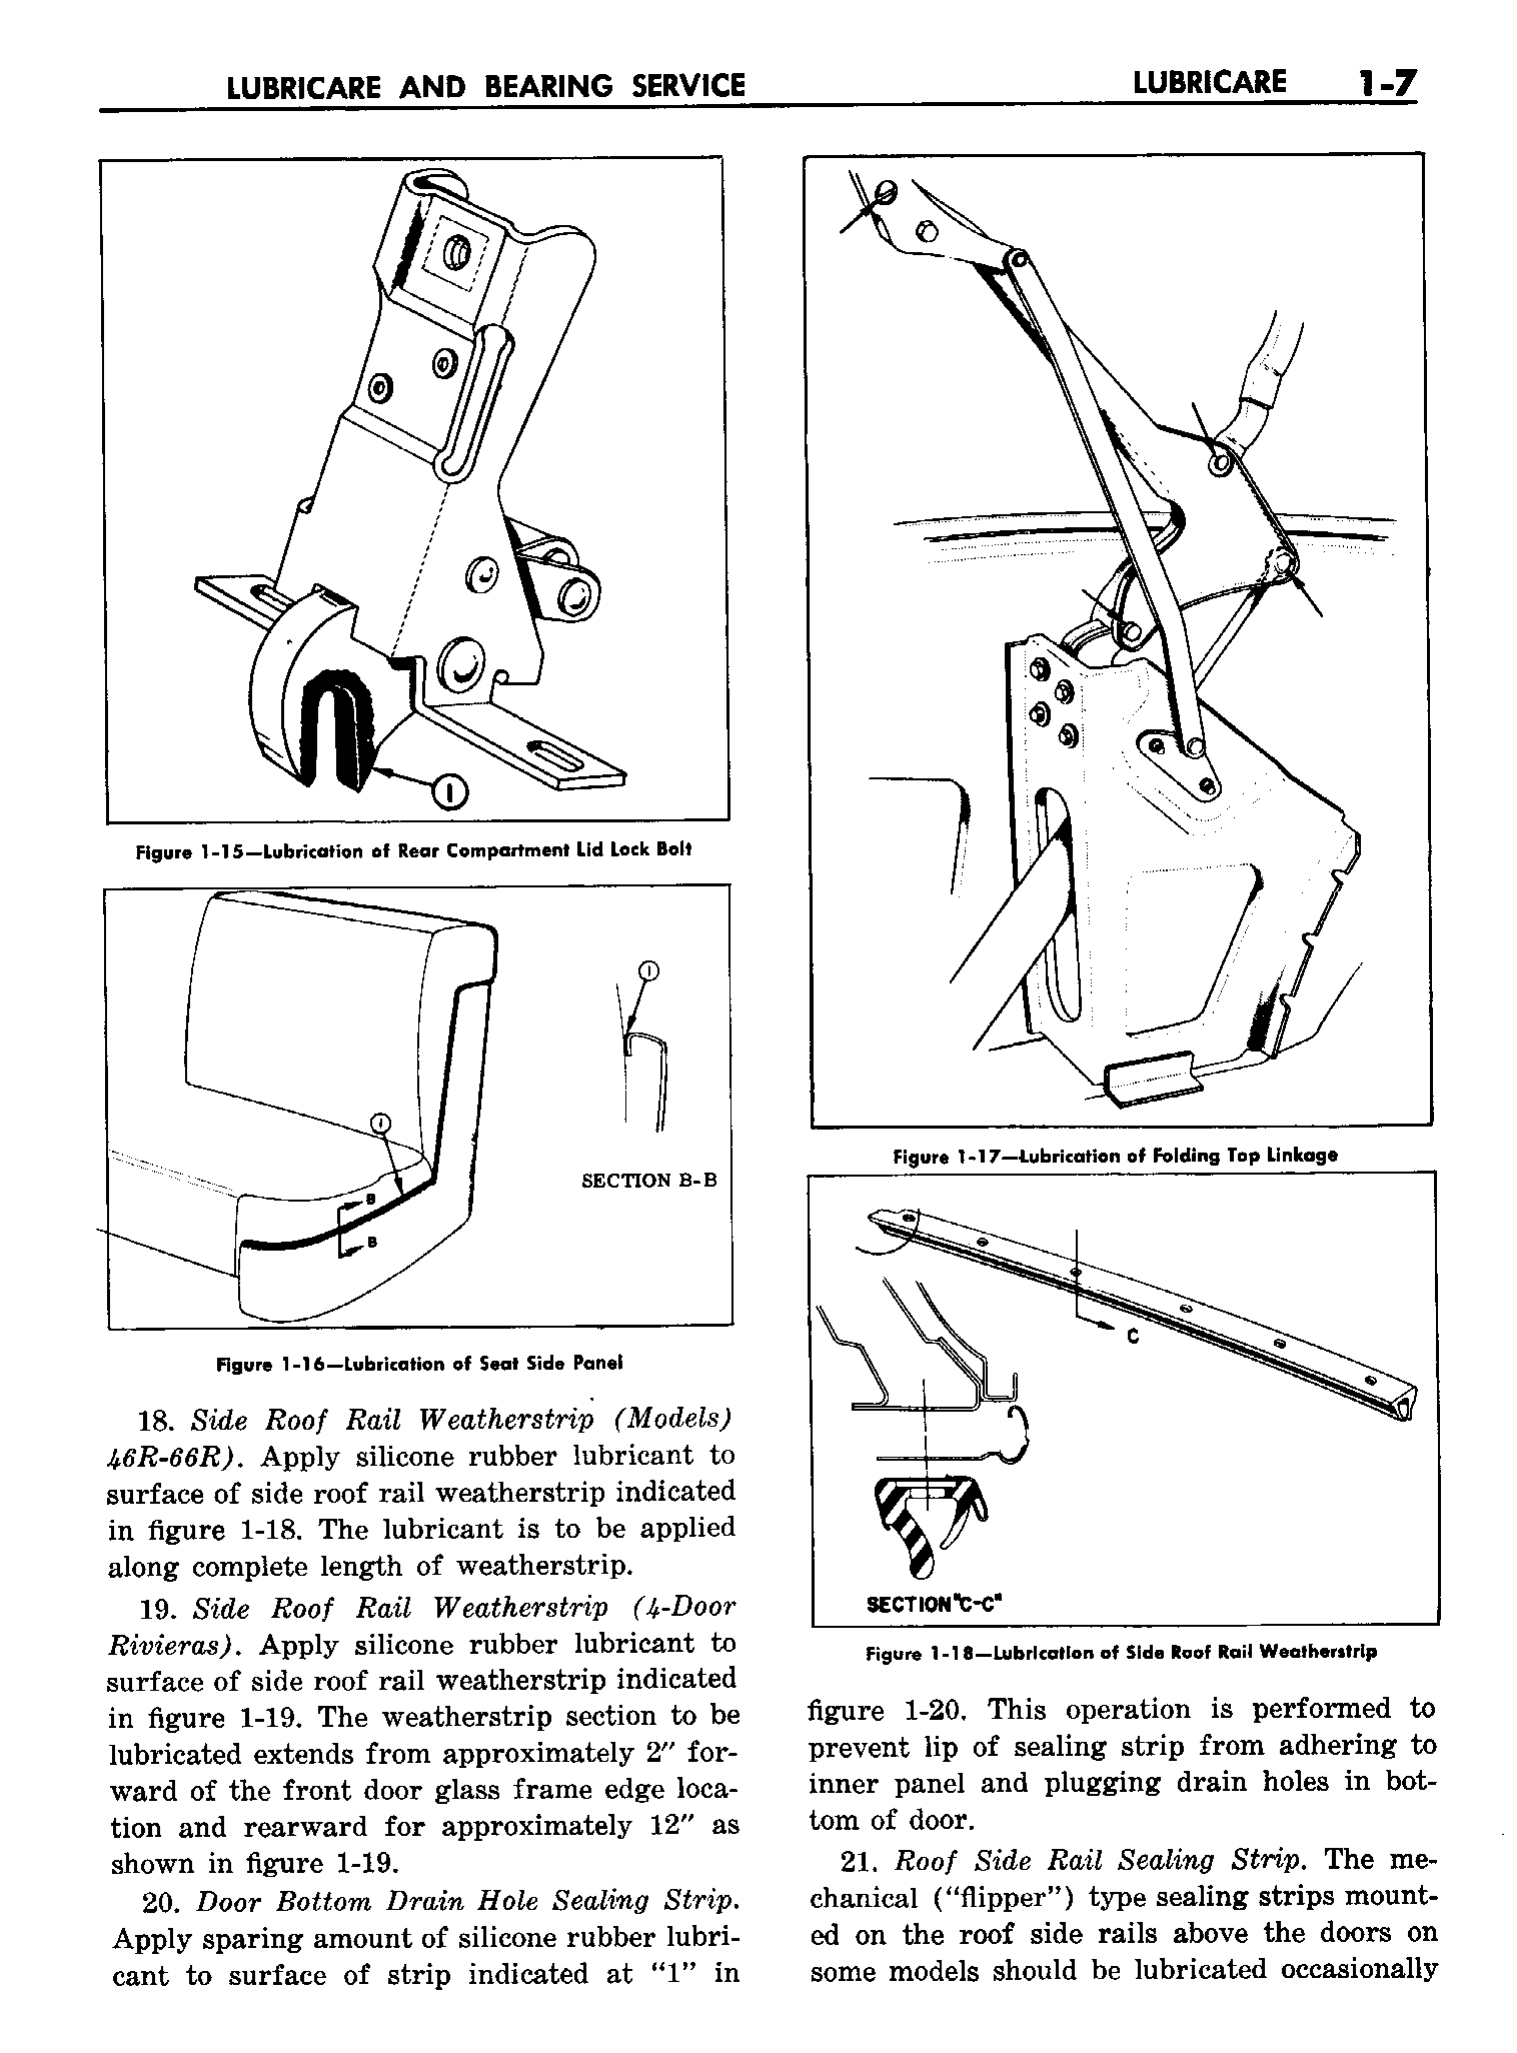 n_02 1958 Buick Shop Manual - Lubricare_7.jpg